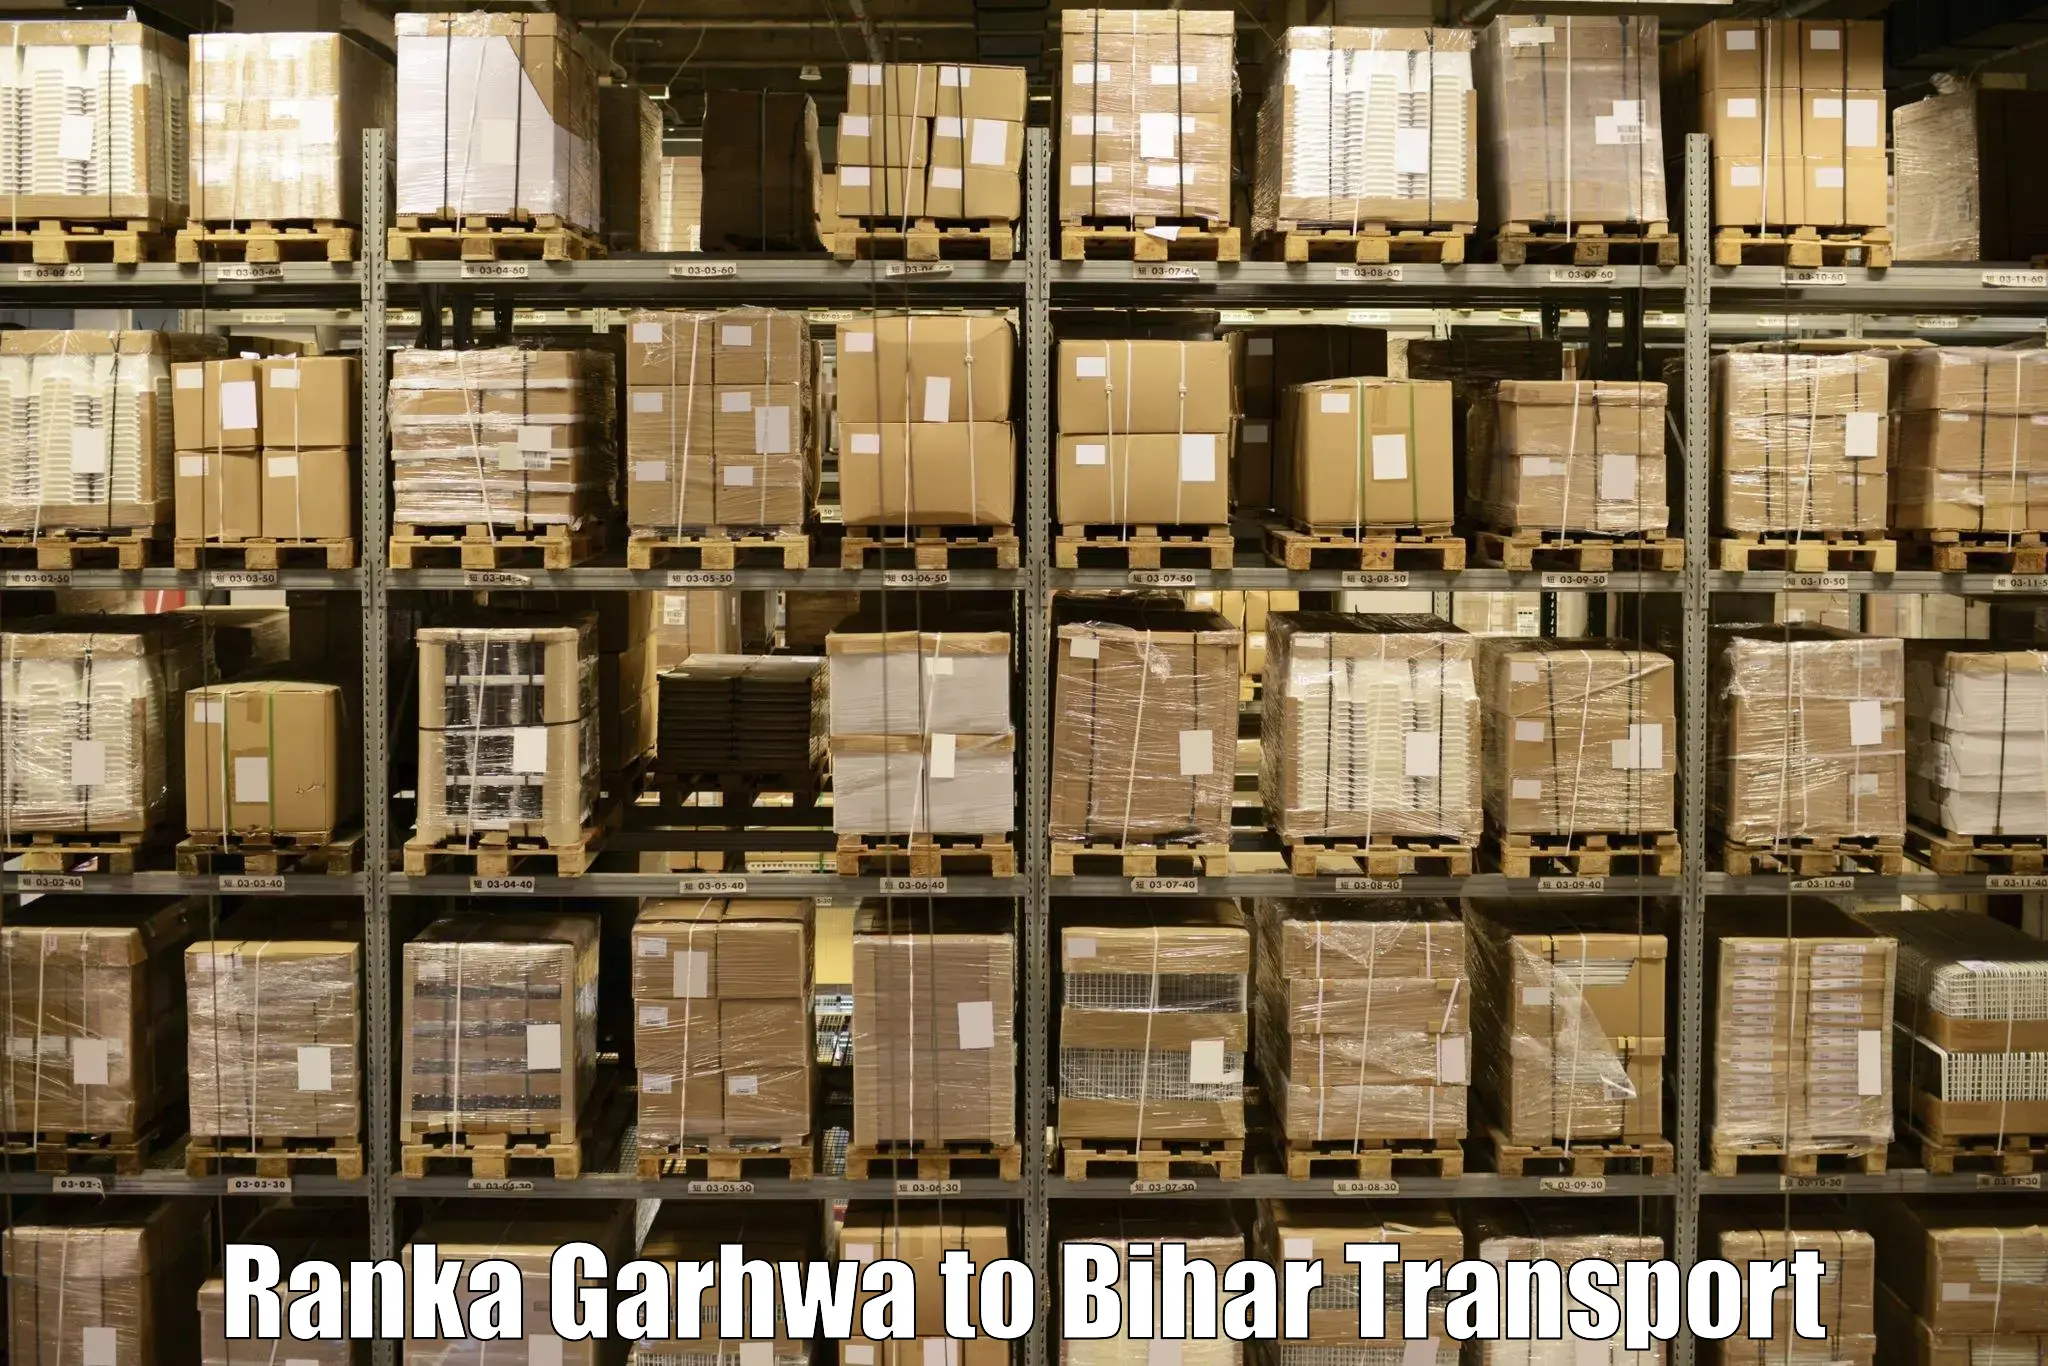 Bike shipping service Ranka Garhwa to Bihar